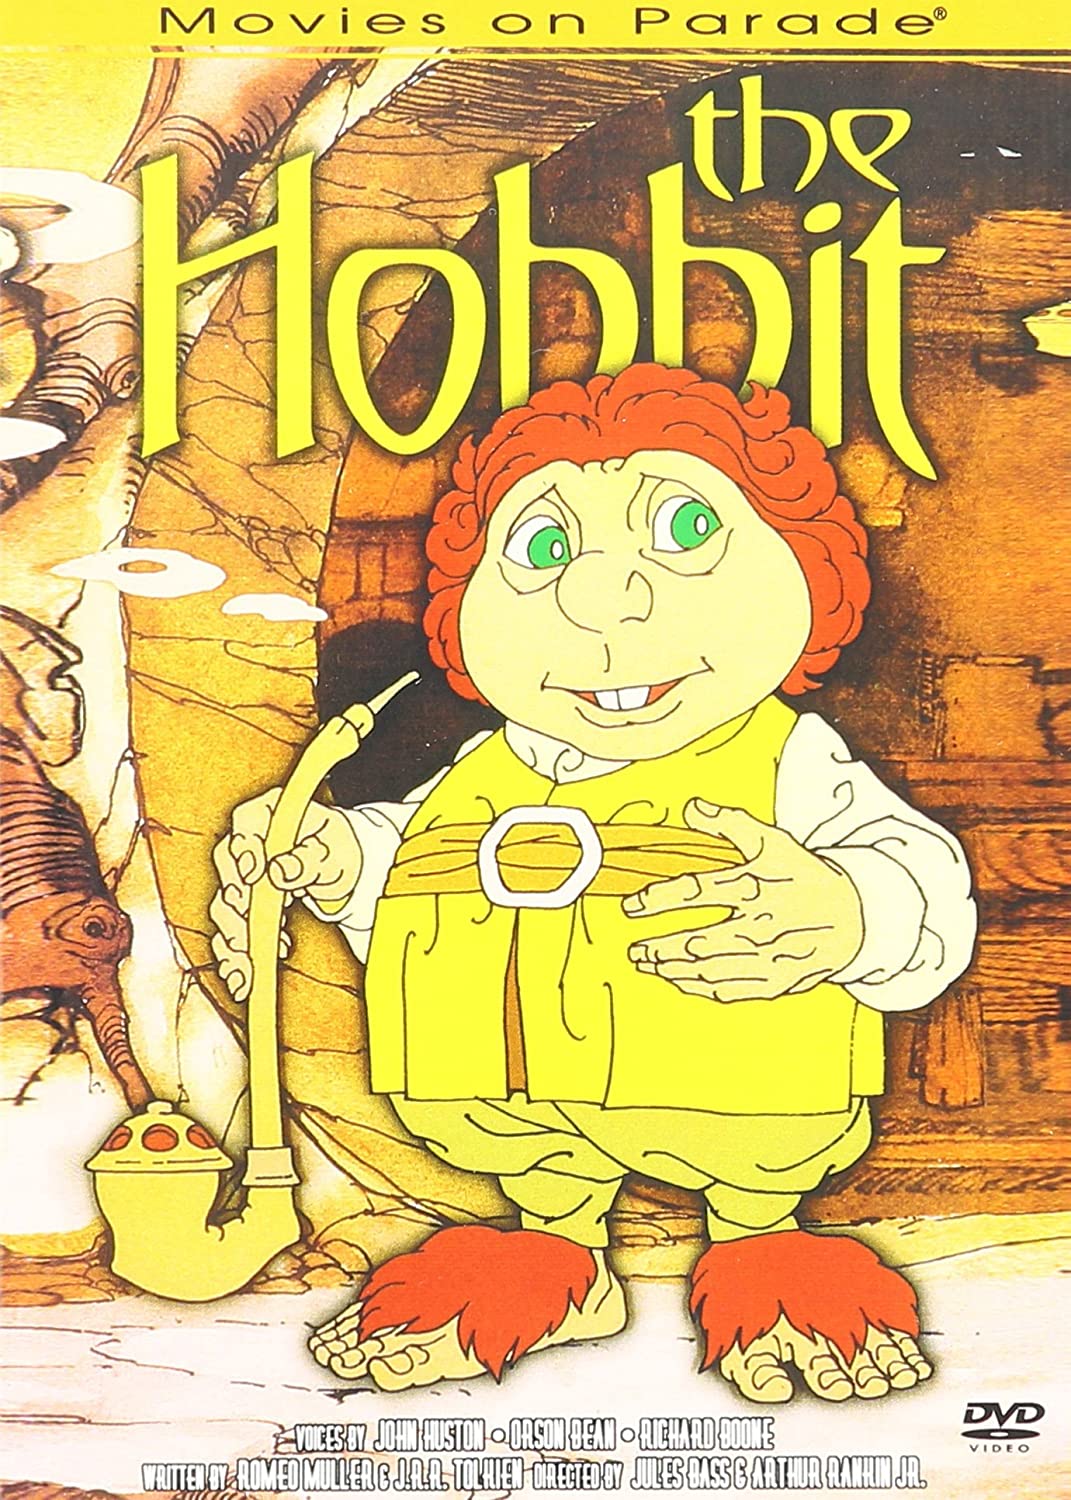 ดูหนังออนไลน์ฟรี The Hobbit (1977) เดอะ ฮอบบิท